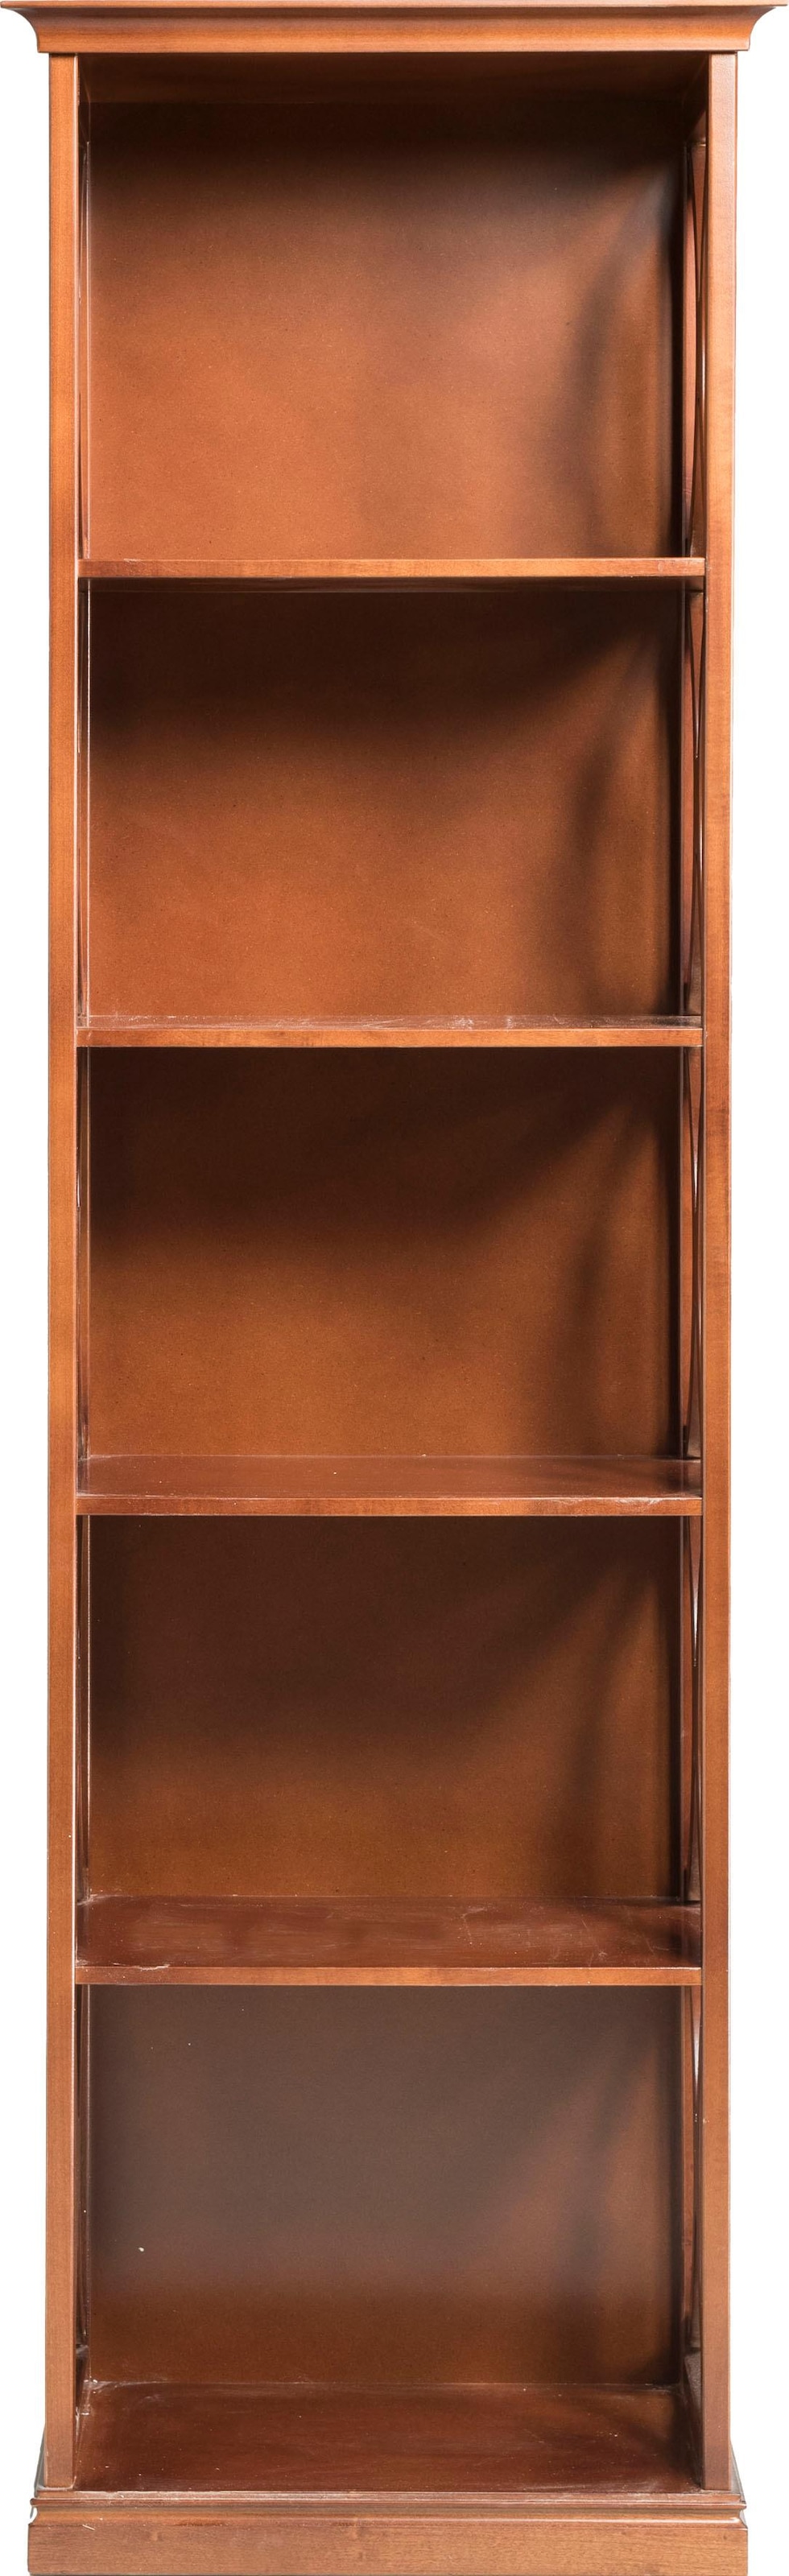 Home affaire Bücherregal Höhe versandkostenfrei »Modigliani«, 191 cm auf